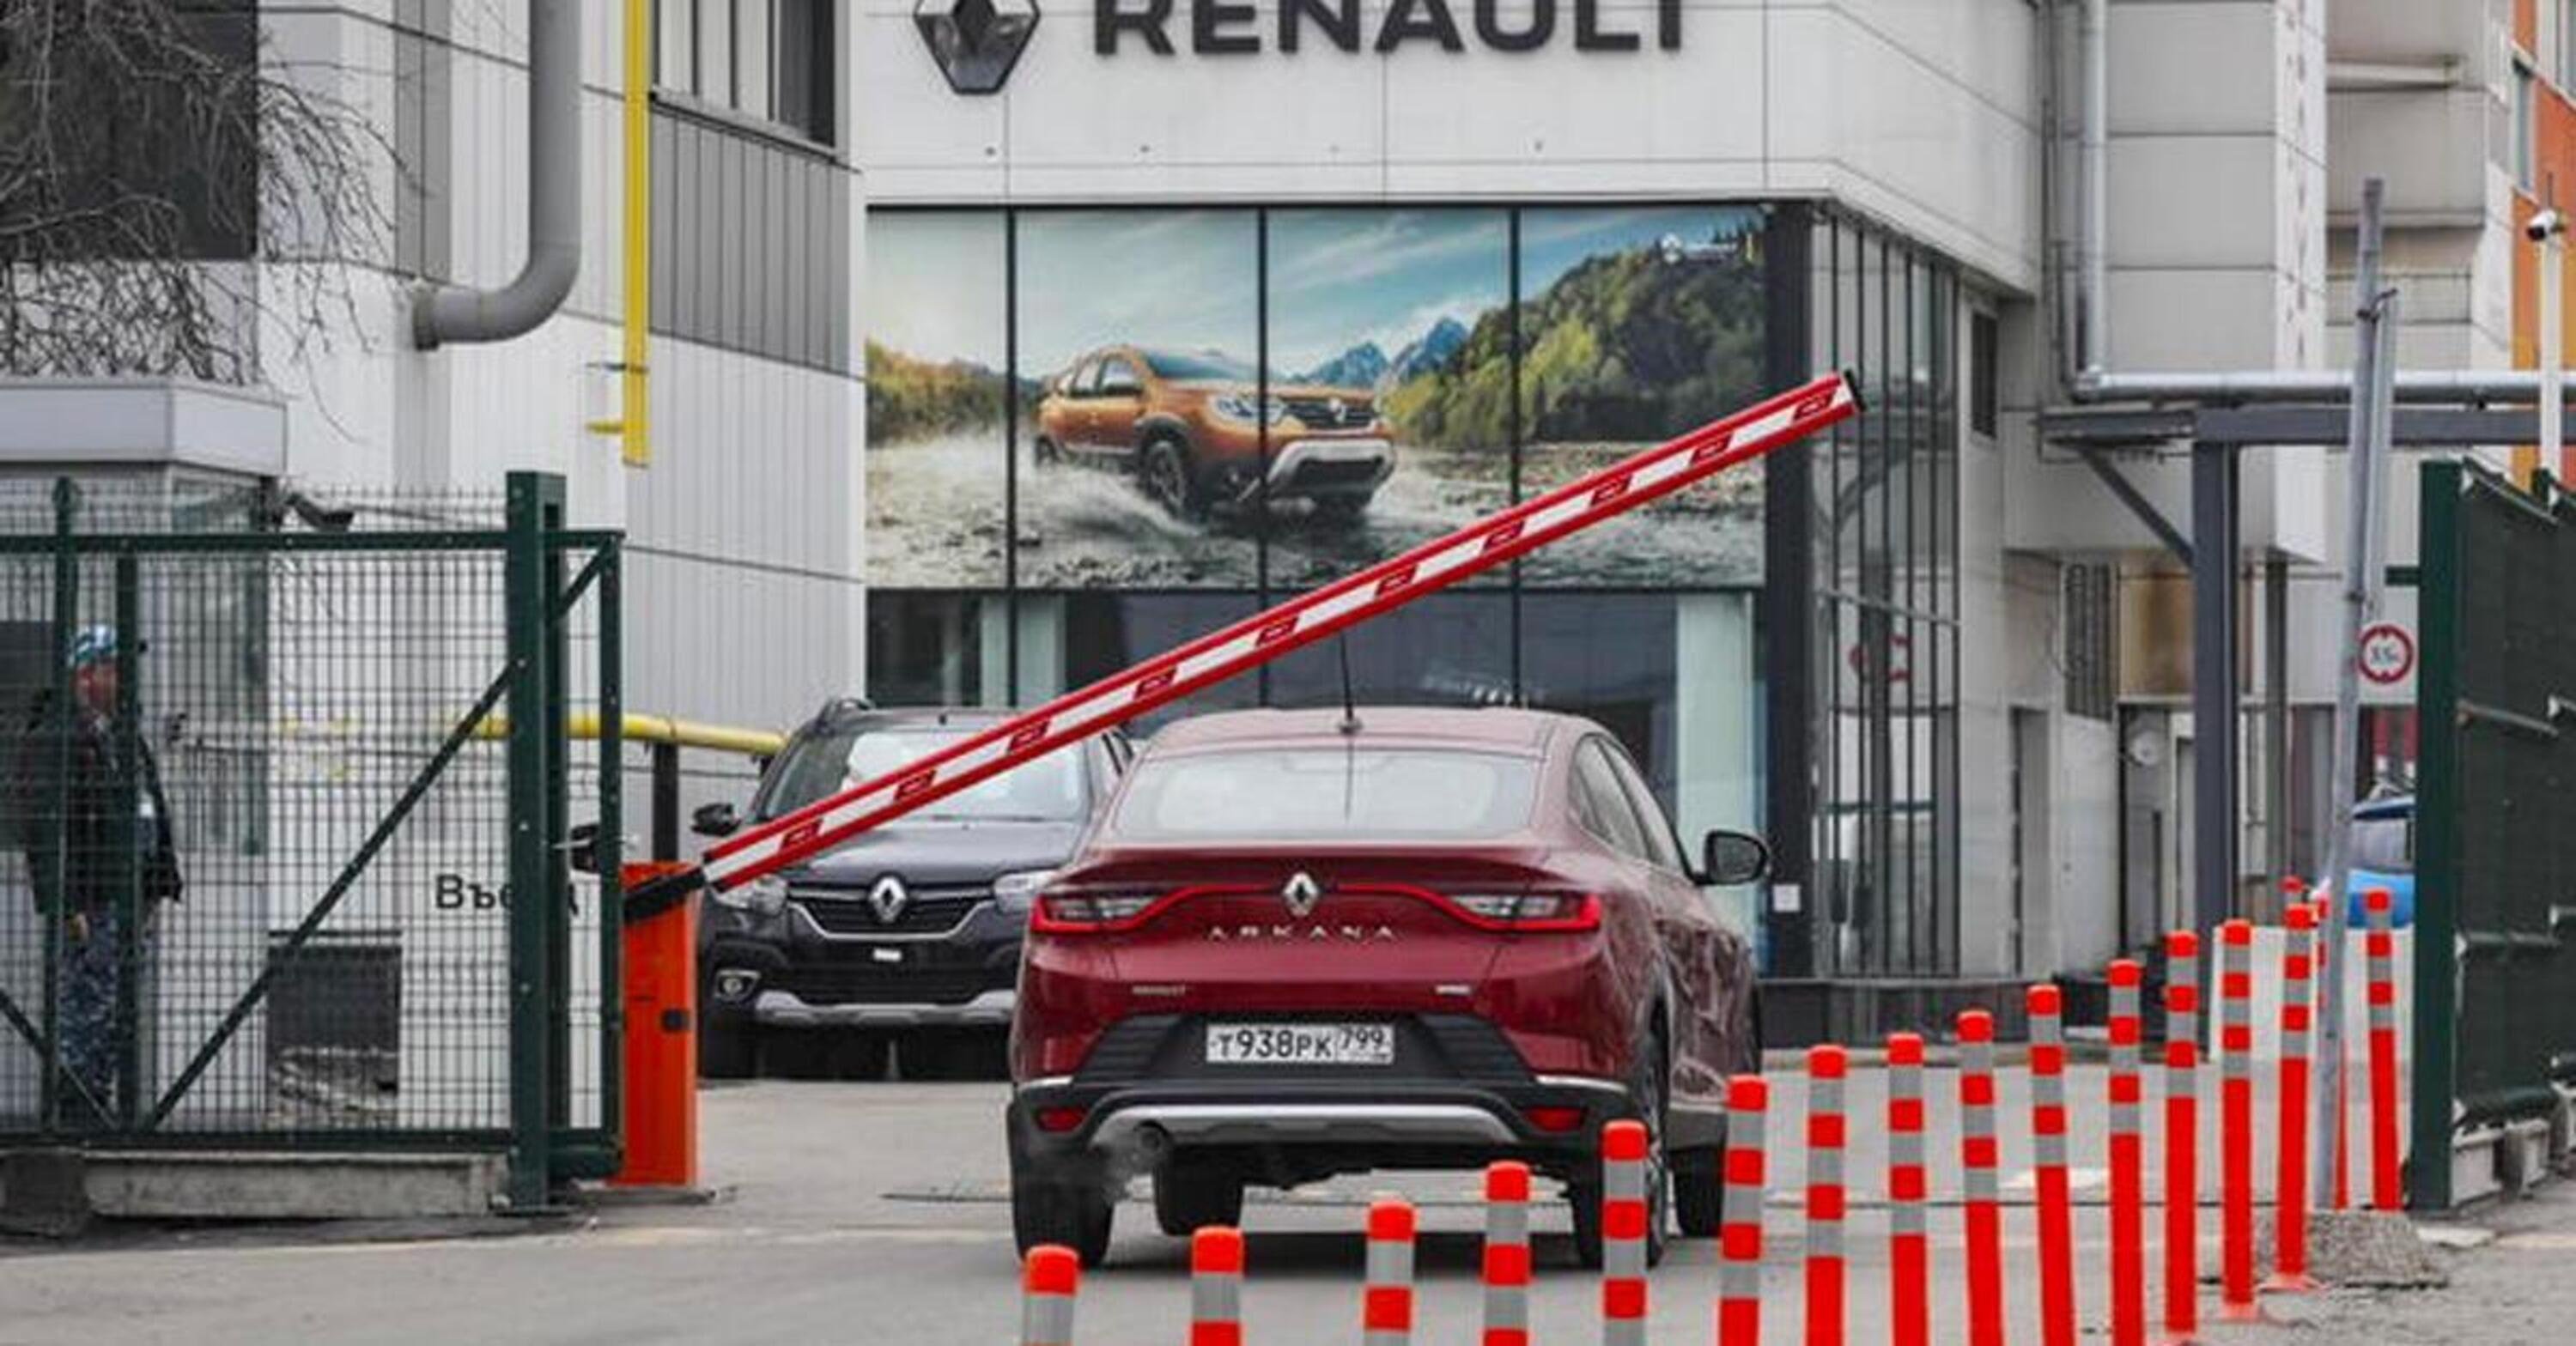 Le attivit&agrave; di Renault in Russia passano allo Stato